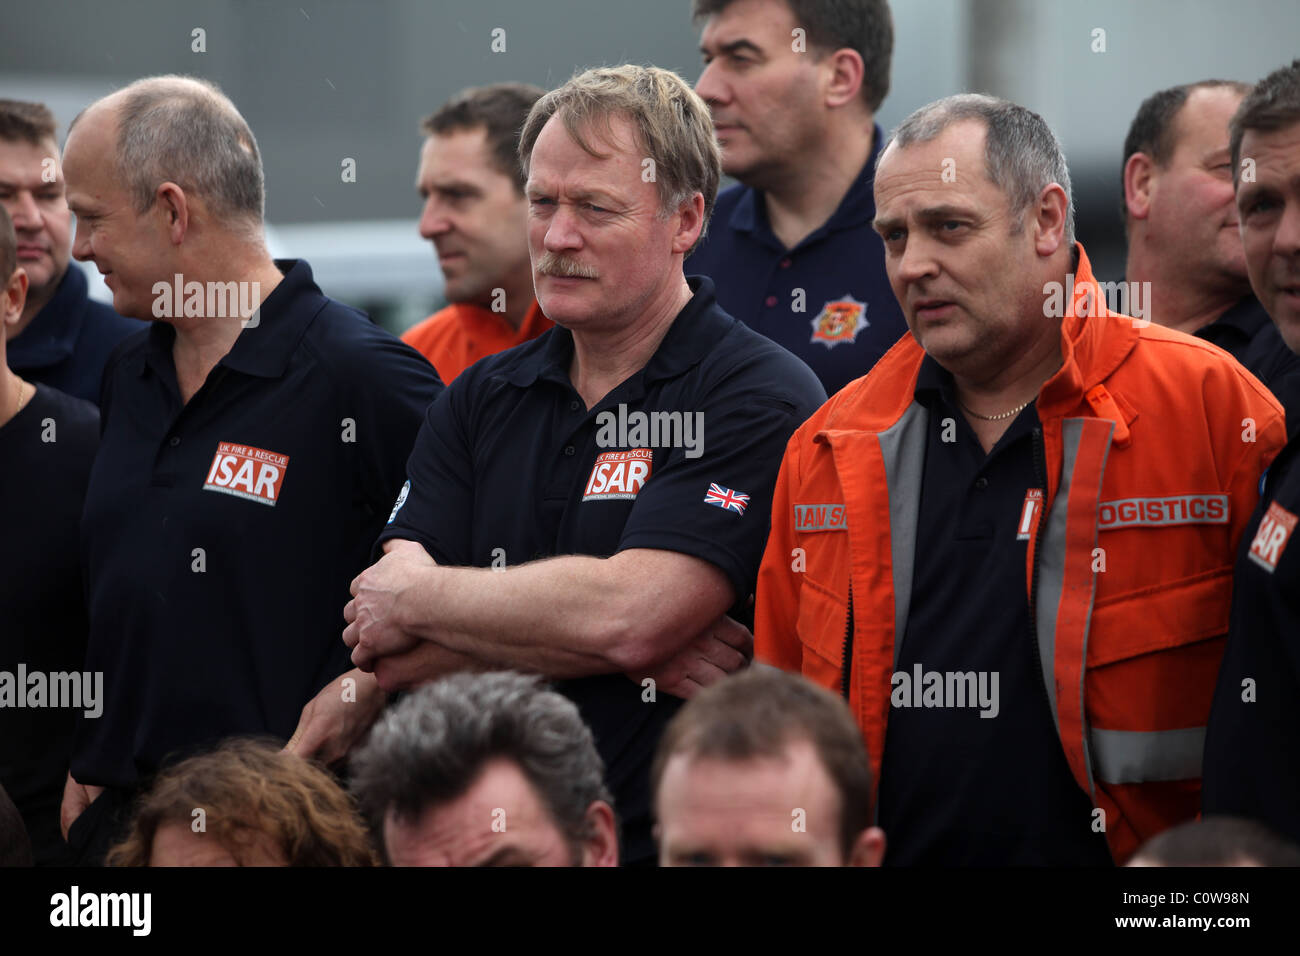 Los miembros británicos del equipo de búsqueda y rescate urbano llegan al aeropuerto de Christchurch tras el terremoto de magnitud 6.3. Foto de stock